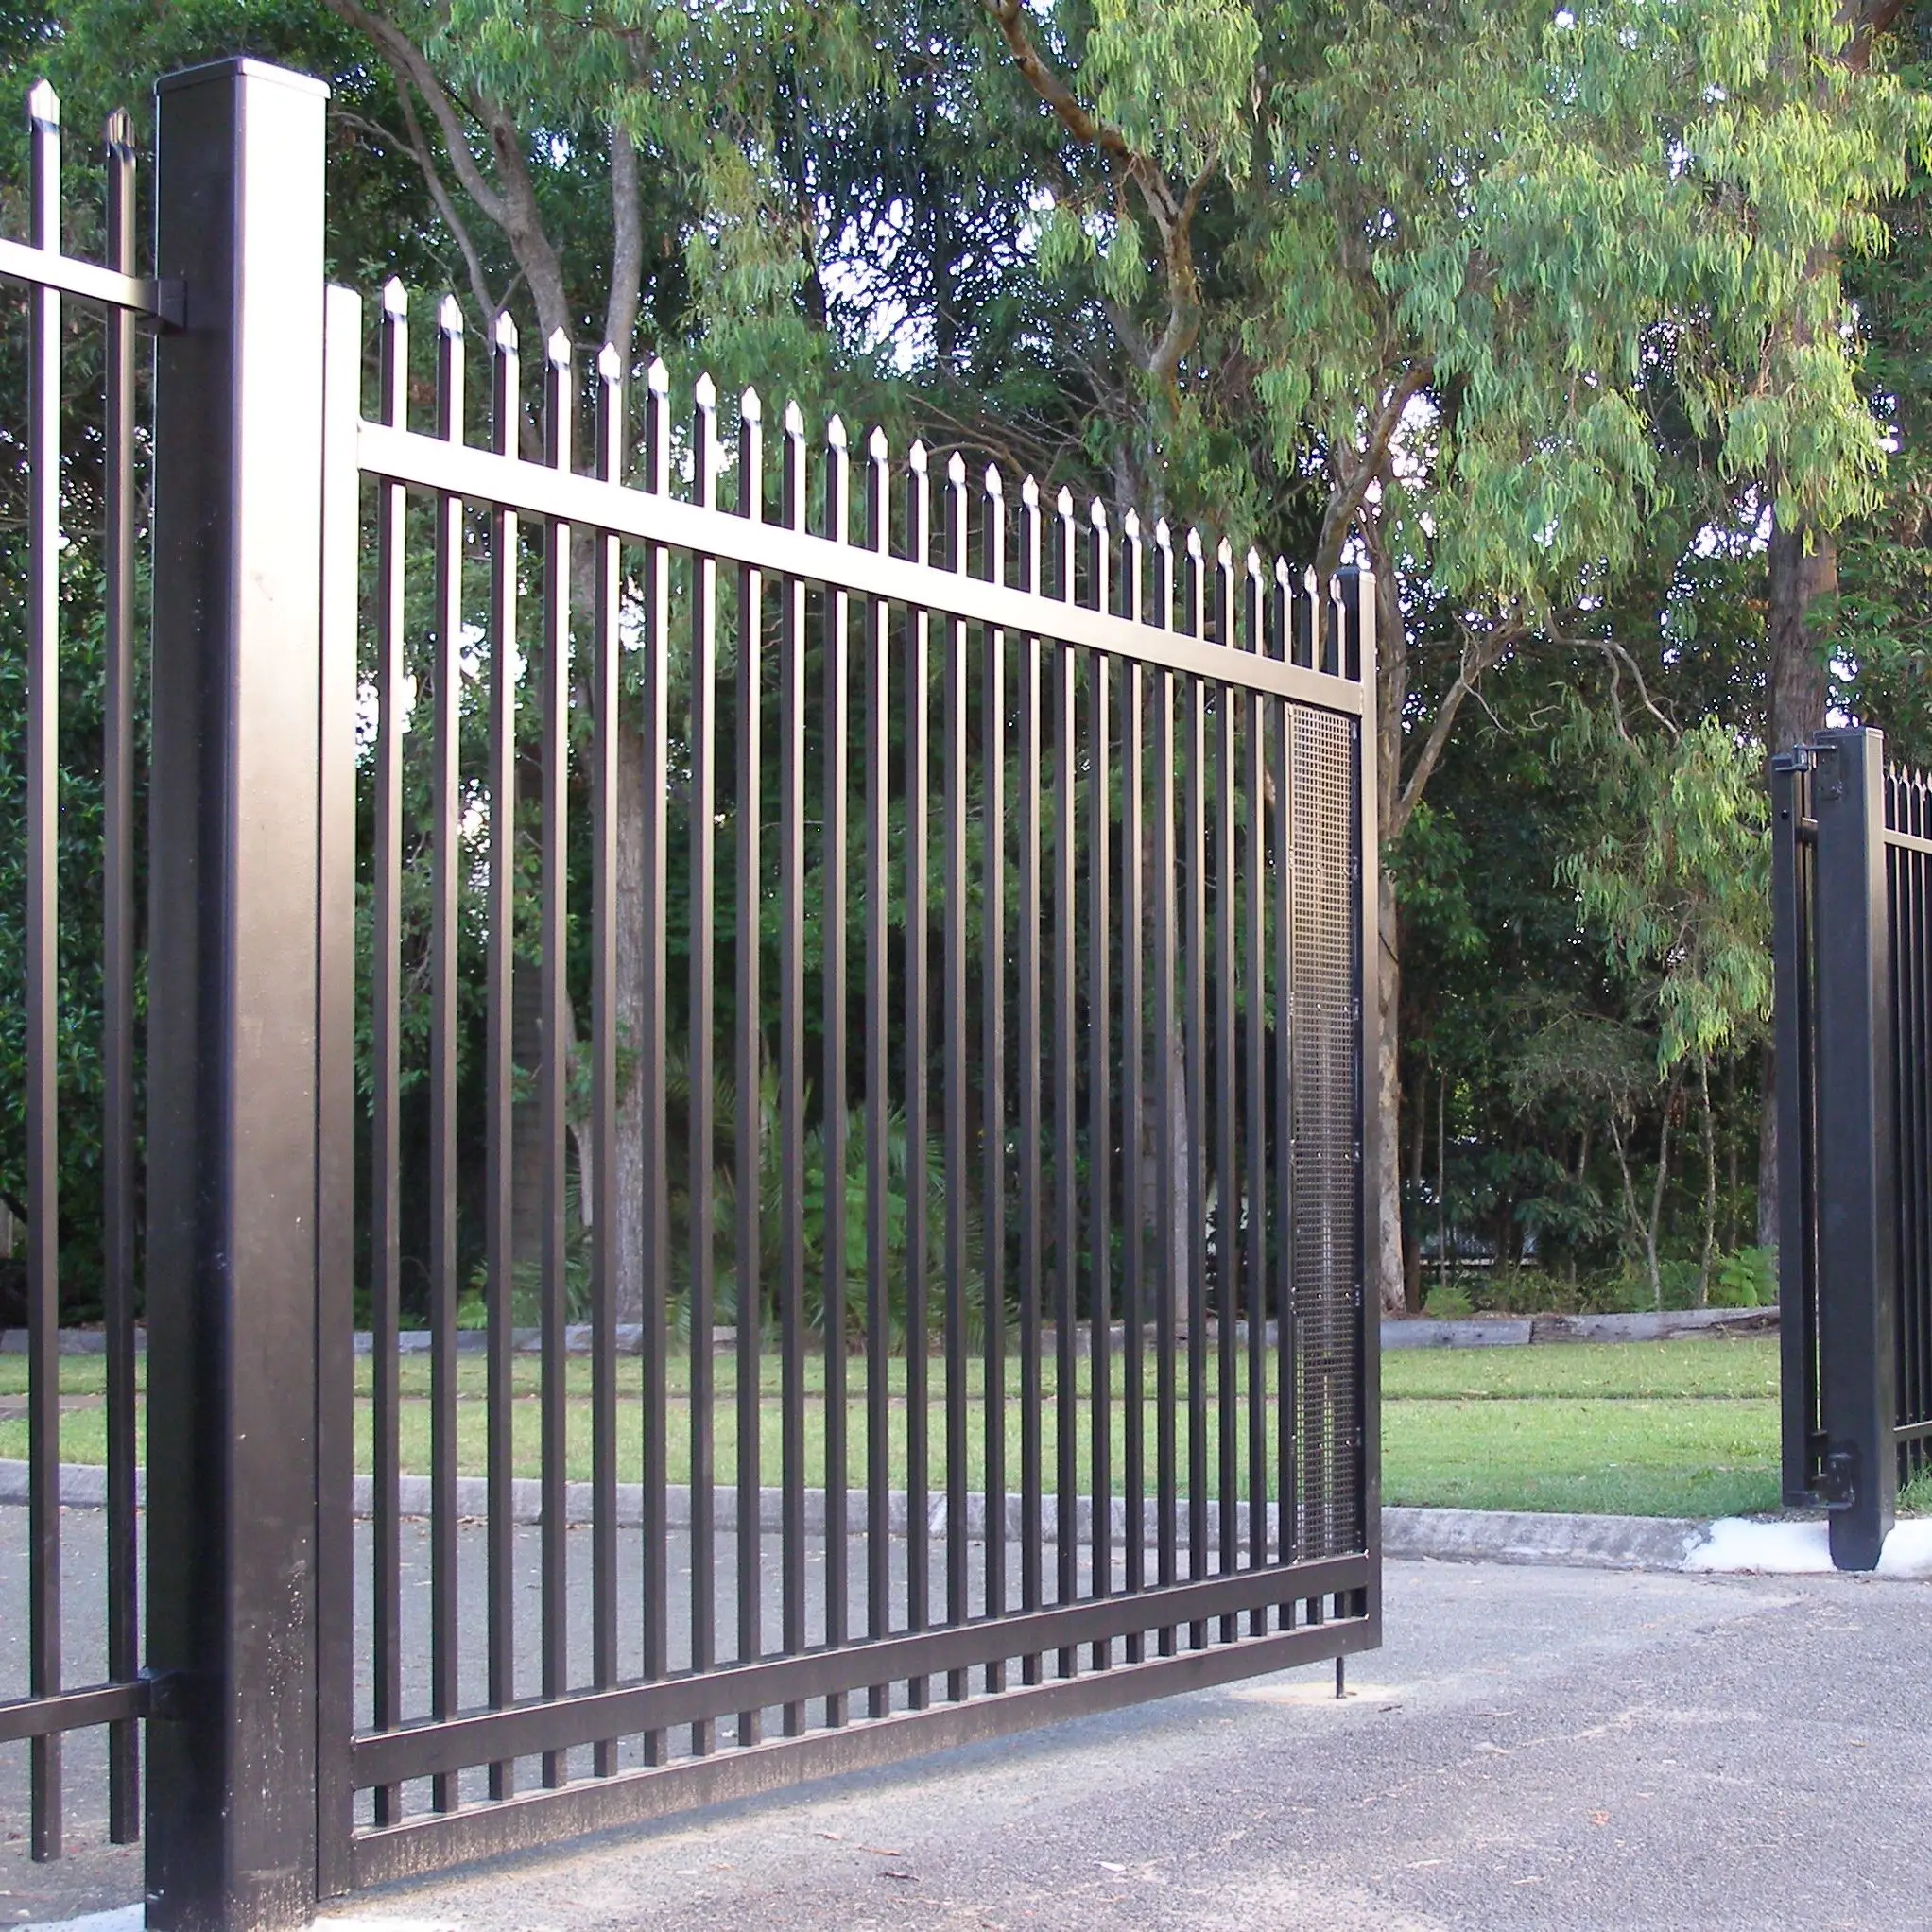 A gate sigma ru. Забор из металла. Красивые заборы из металла. Железный забор. Ворота металлические.